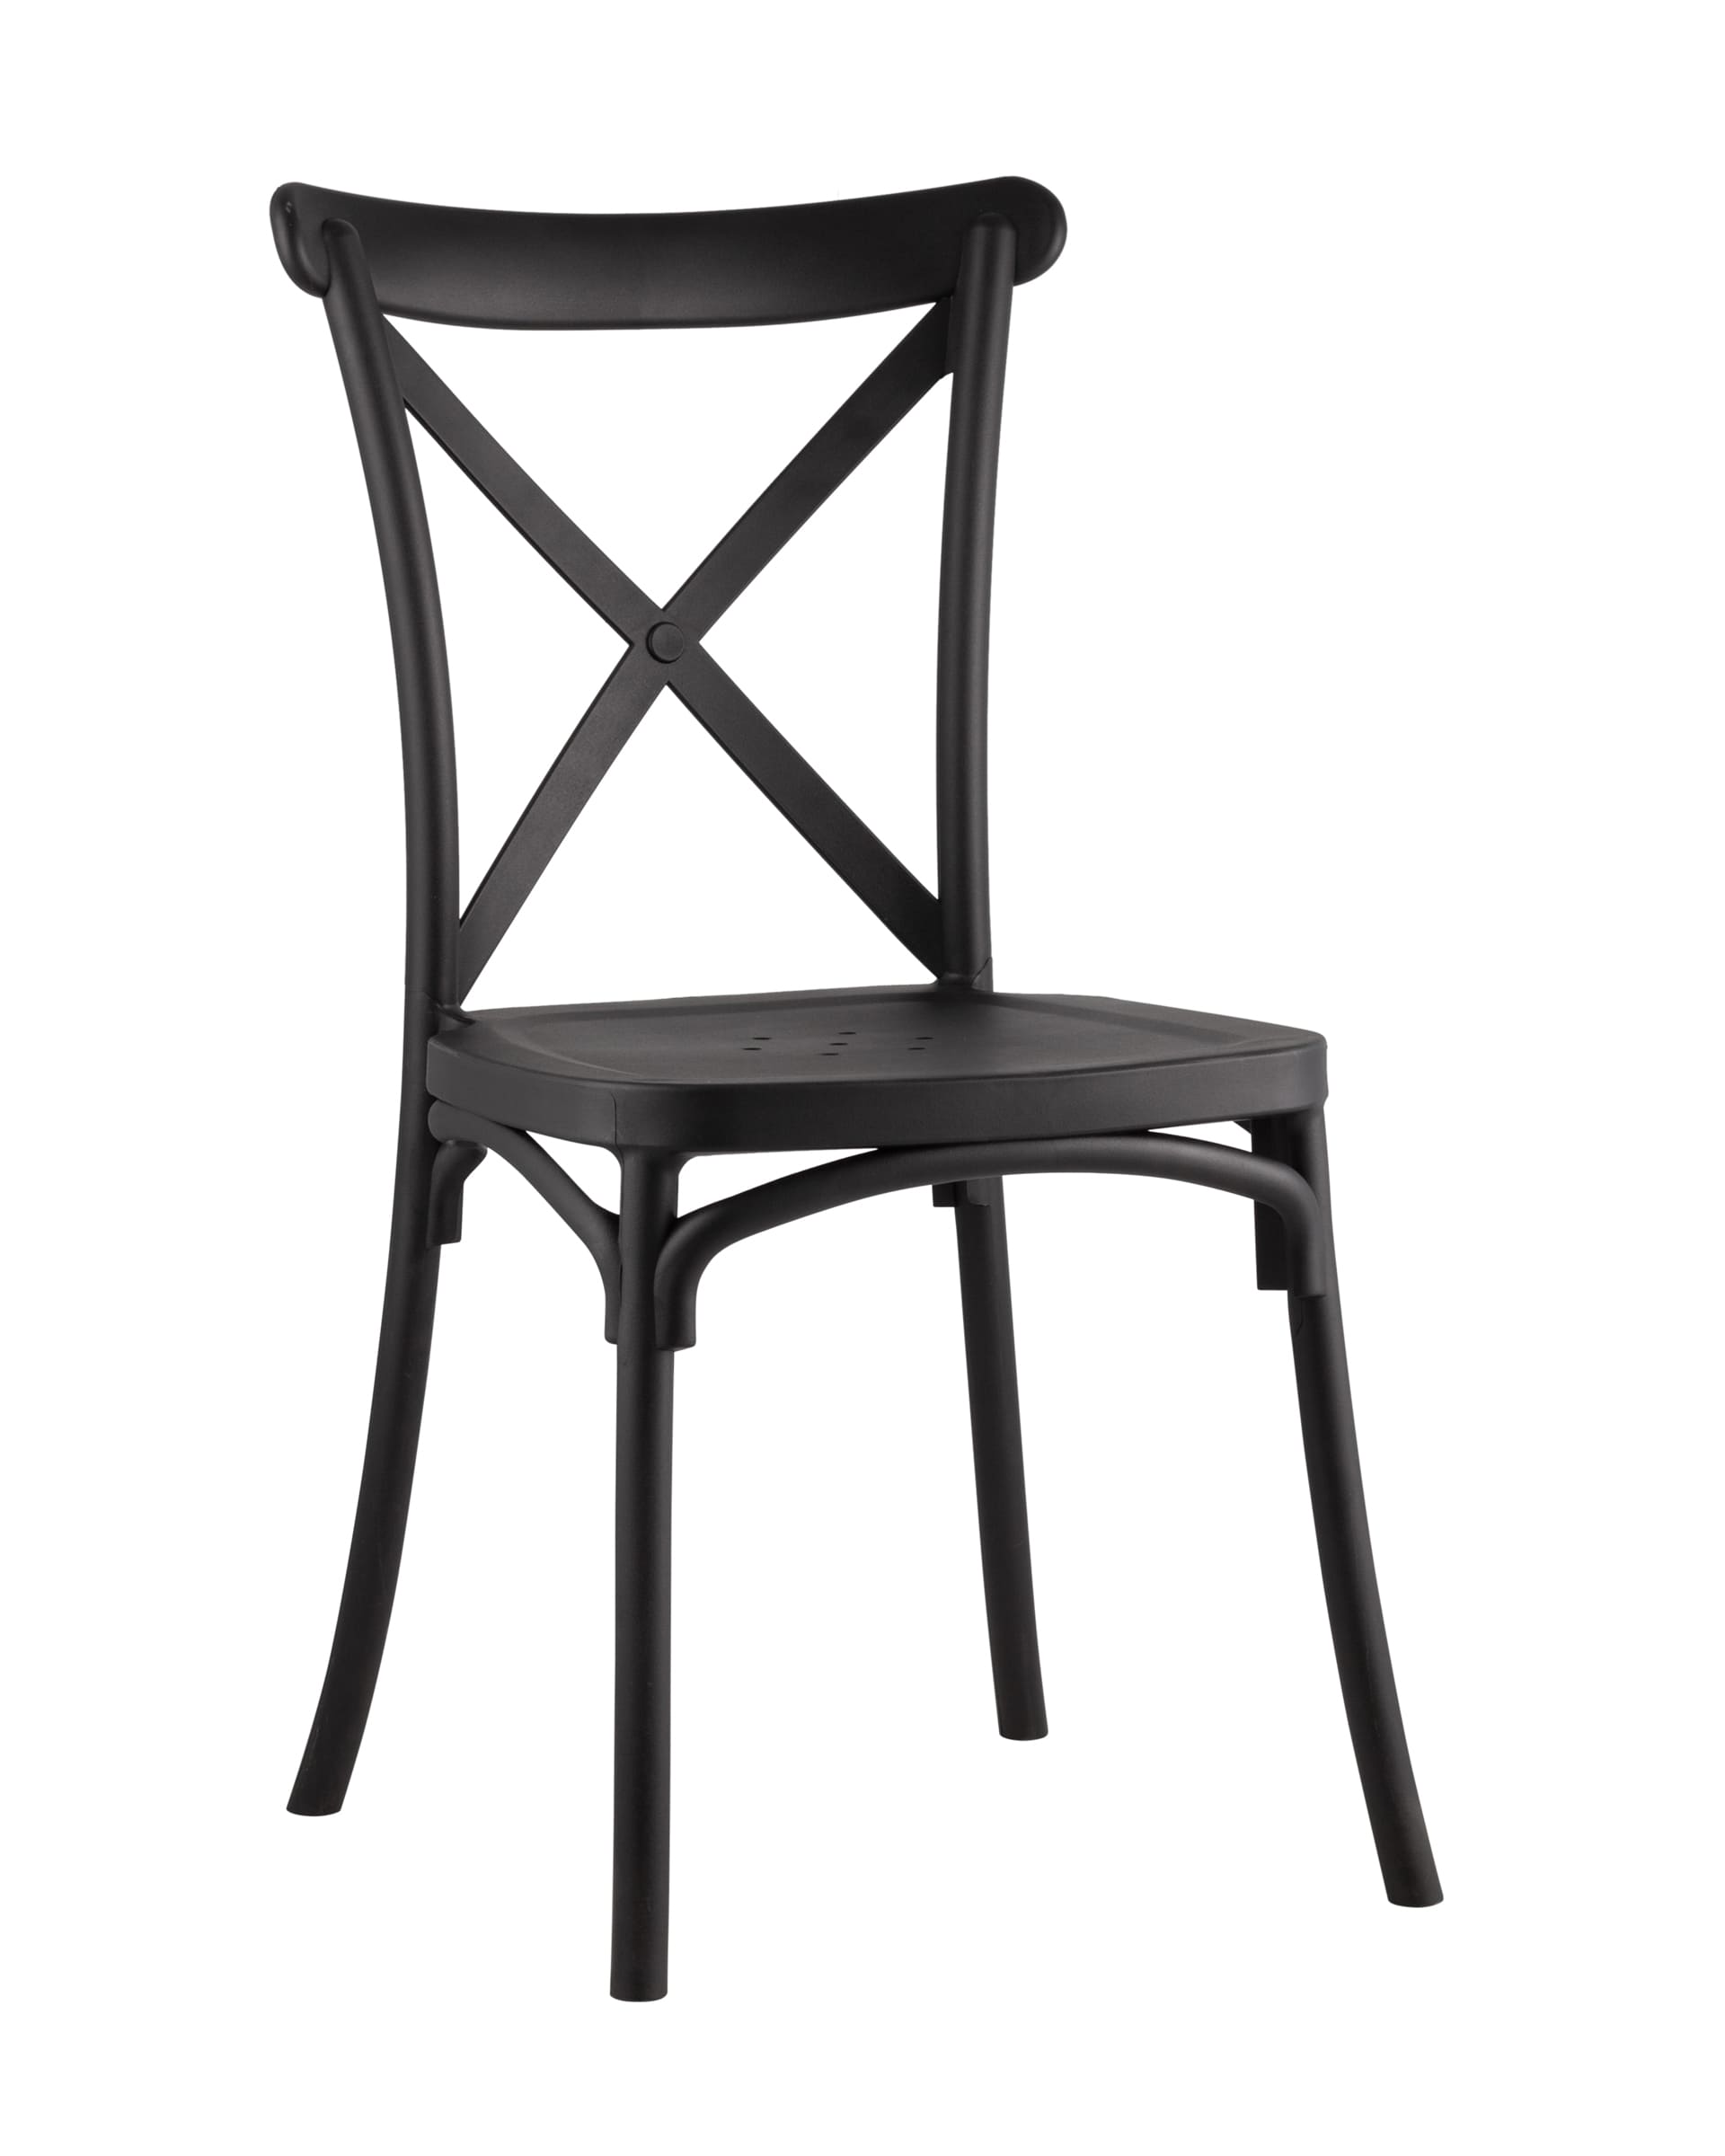 Обеденные стулья Стул кроссбэк (stoolgroup) черный 43x89x52 см.